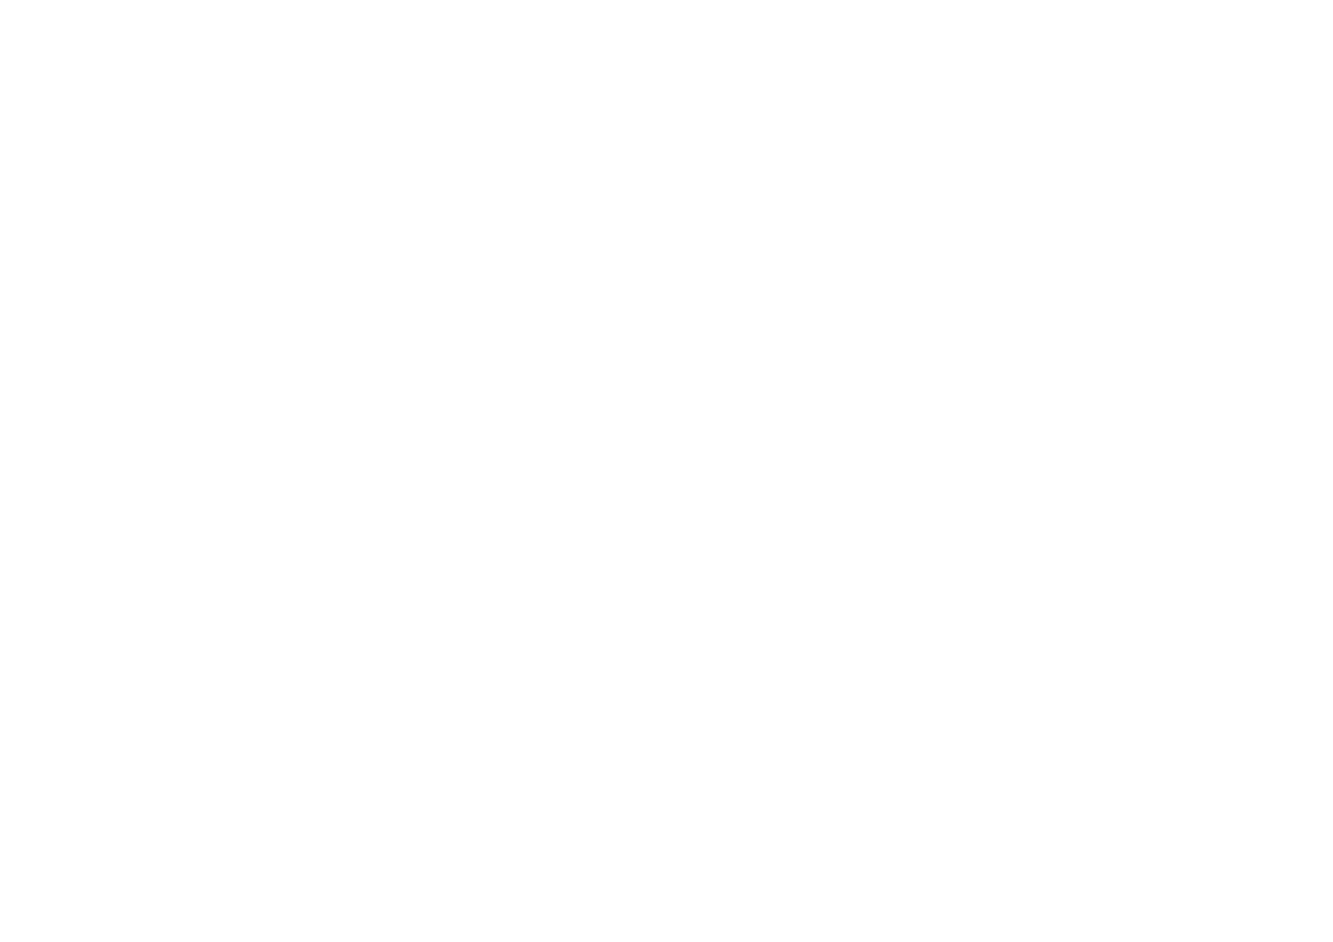 上海市服飾學會 職業服與校服專業委員會